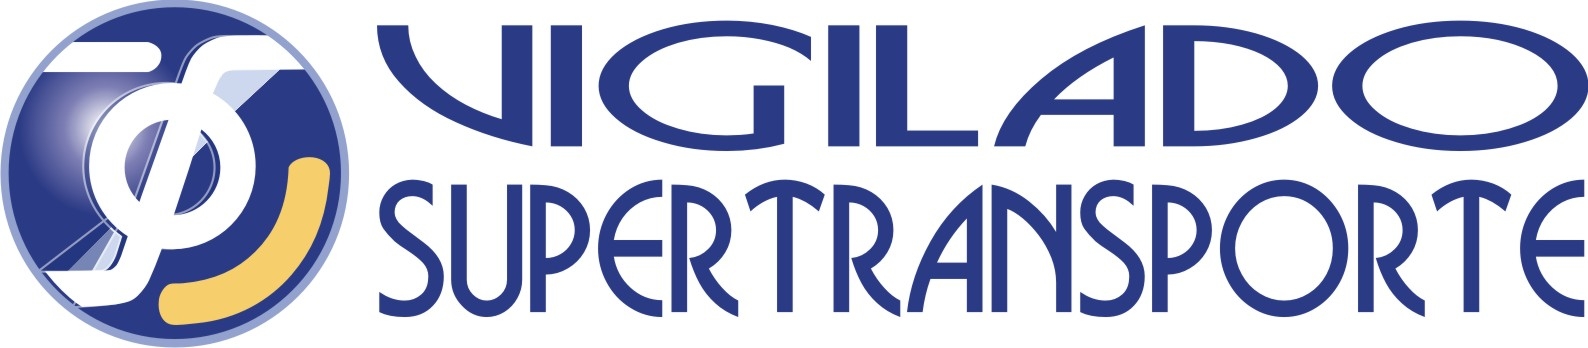 Vigilado Supertransporte Logo photo - 1